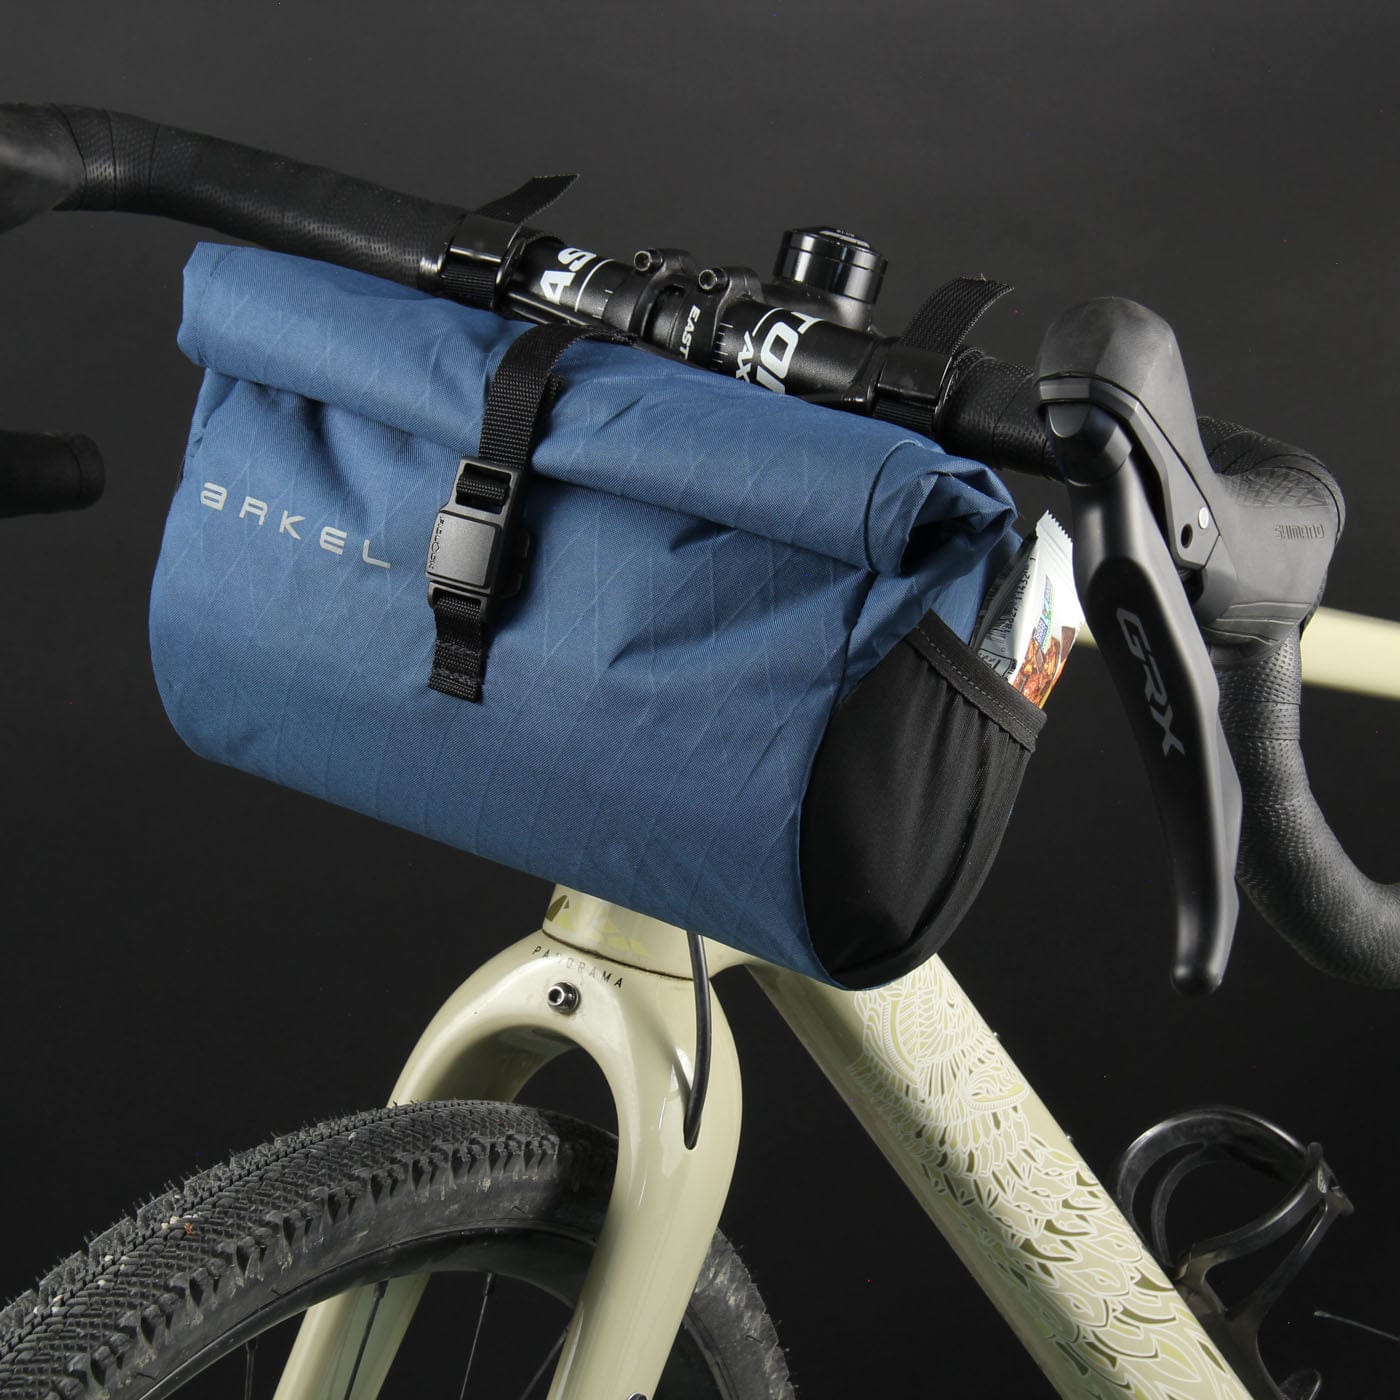 Arkel Bike Bags E.T Burrito - Waterproof Handlebar Bag